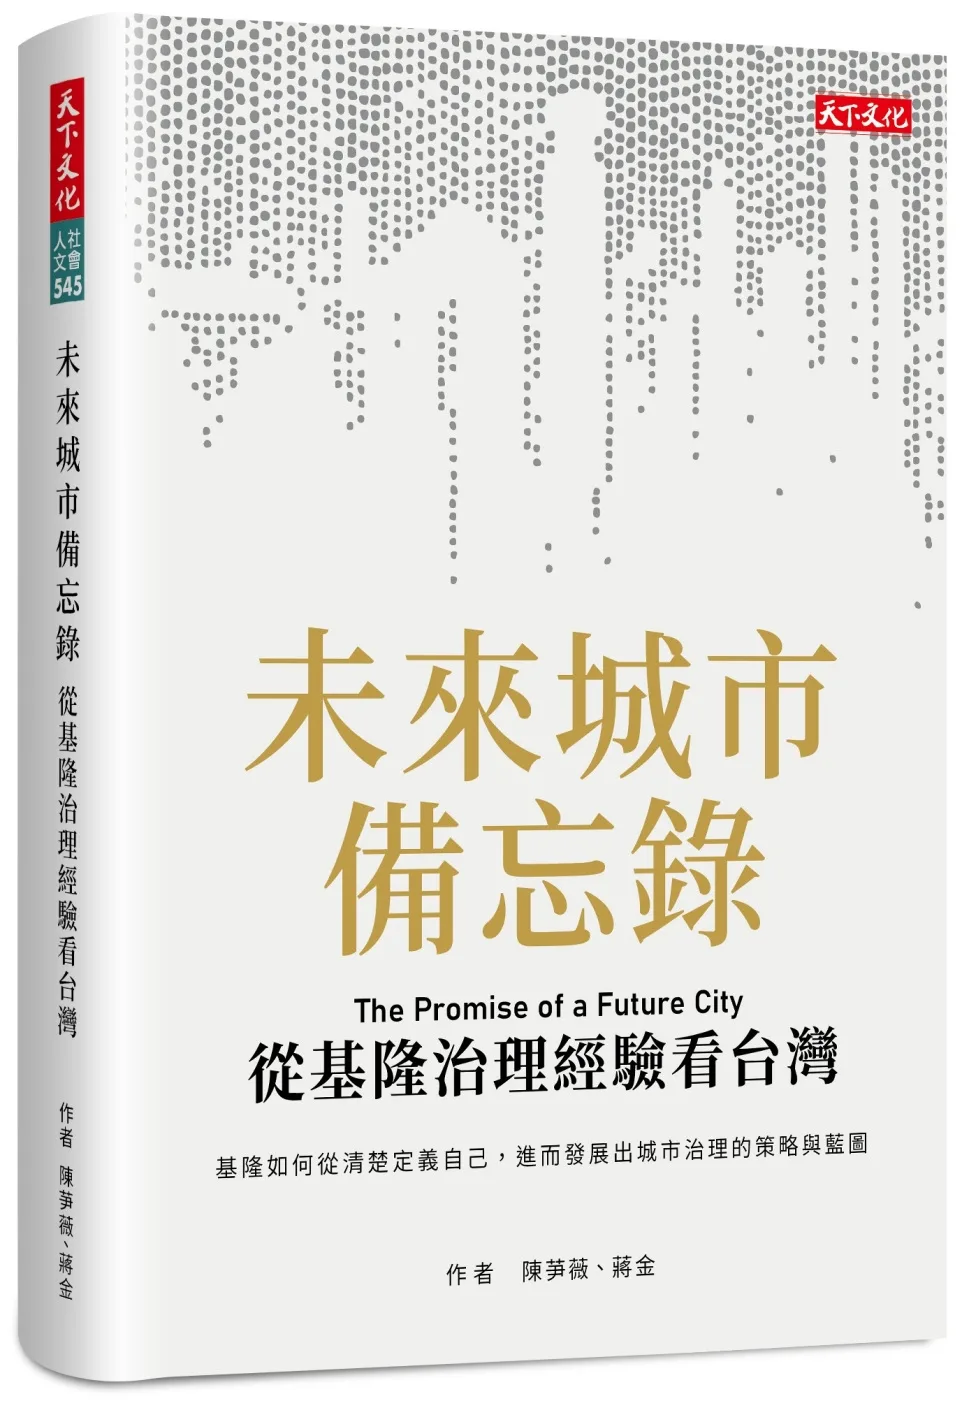 未來城市備忘錄：從基隆治理經驗看台灣